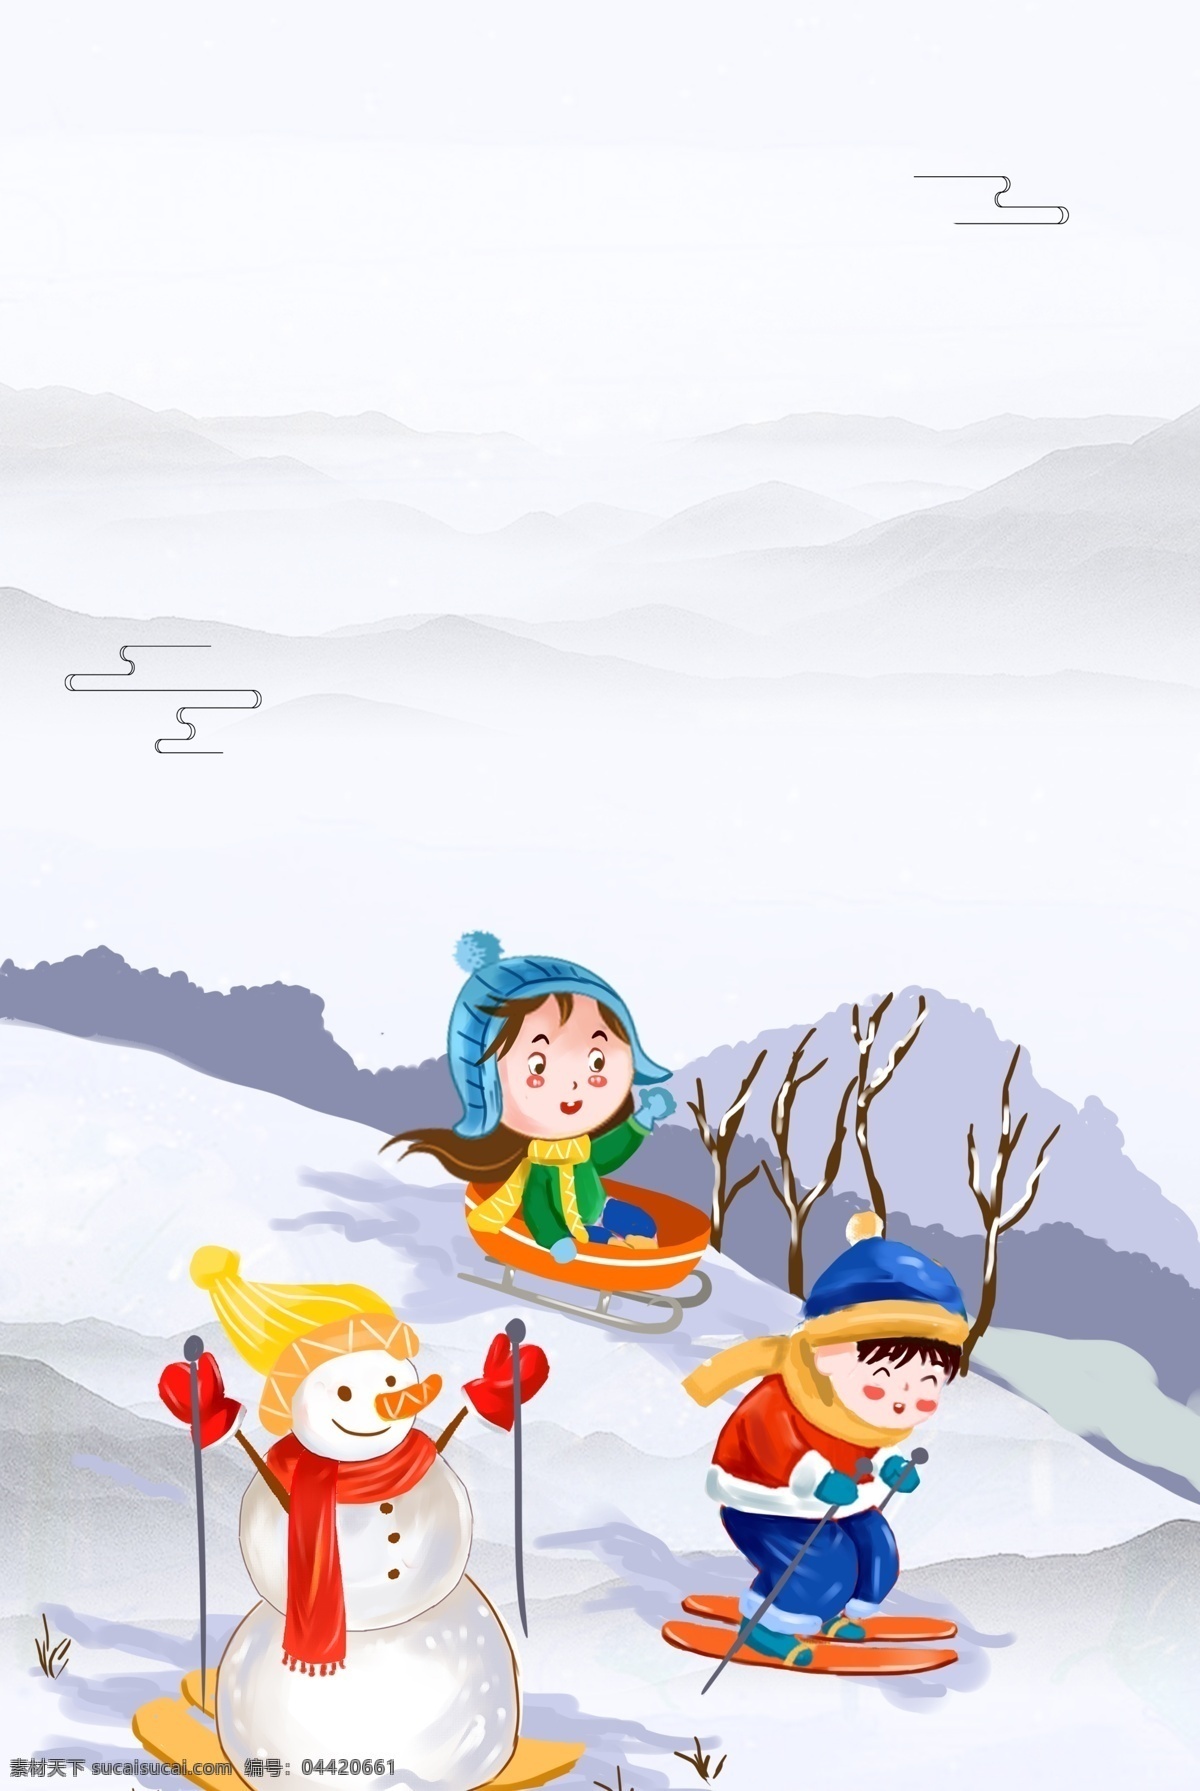 冬令营 滑雪 卡通 海报下载 雪人 男孩 女孩 冬天 雪花 海报 背景